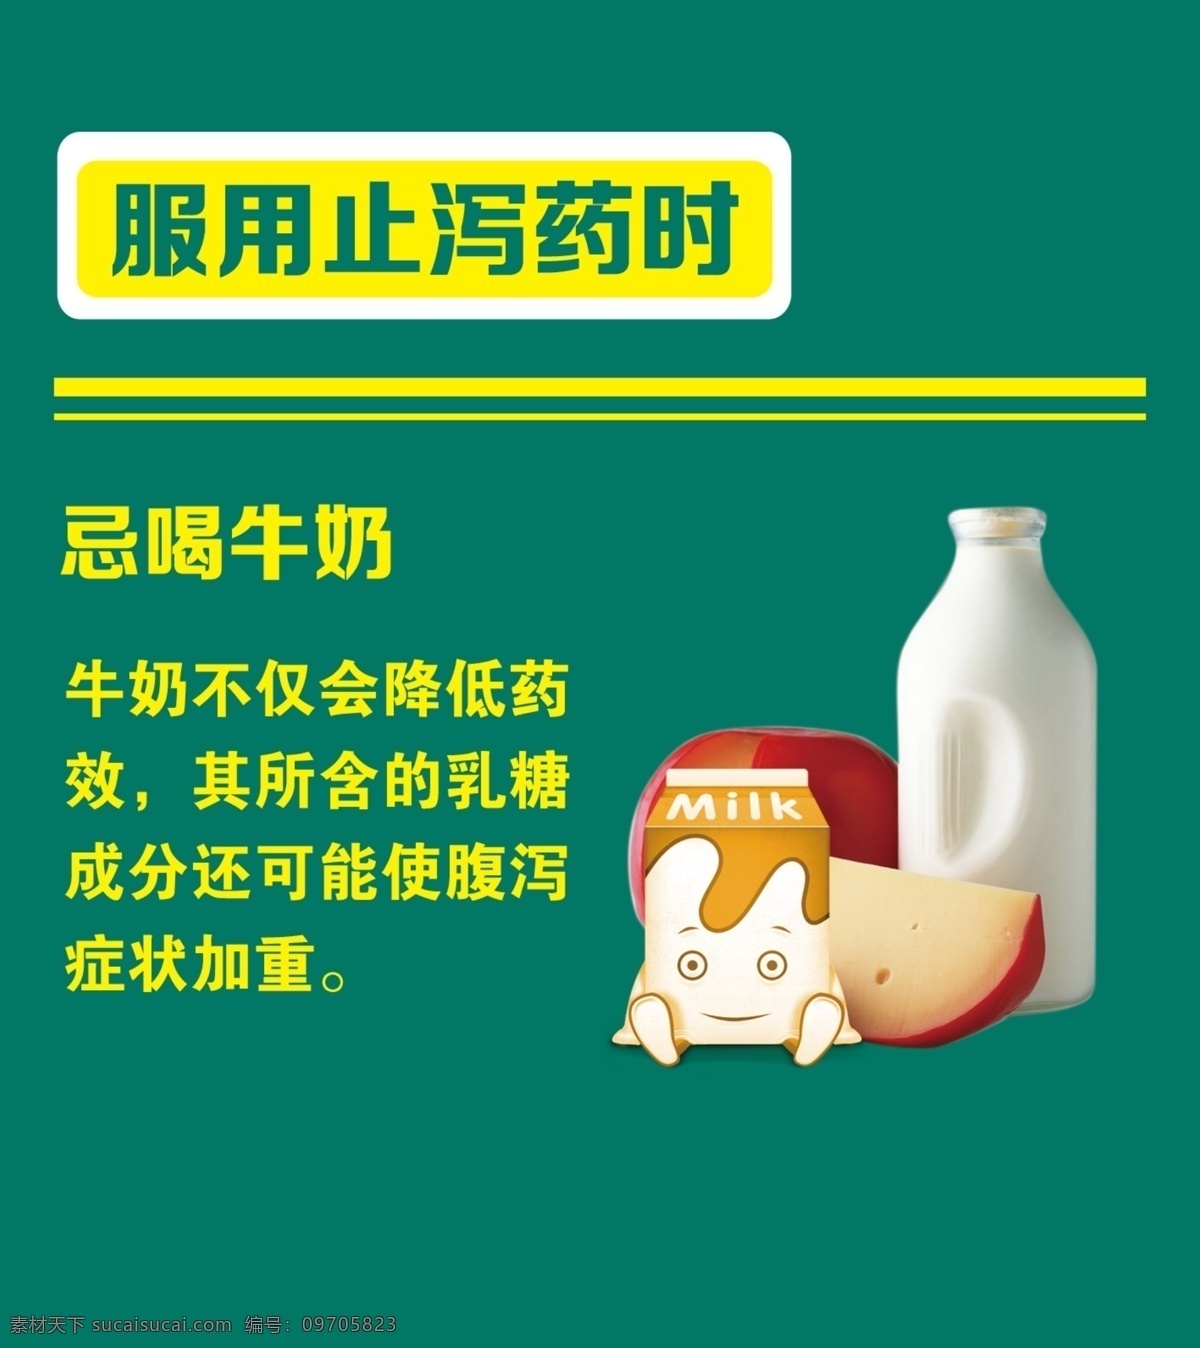 服药禁忌 绿色 牛奶 药店温馨 提示牌 喝水的习惯 感冒的常识 淡绿色展板 常见的服务 方法禁忌 胶囊 药丸 展板模板 平面设计